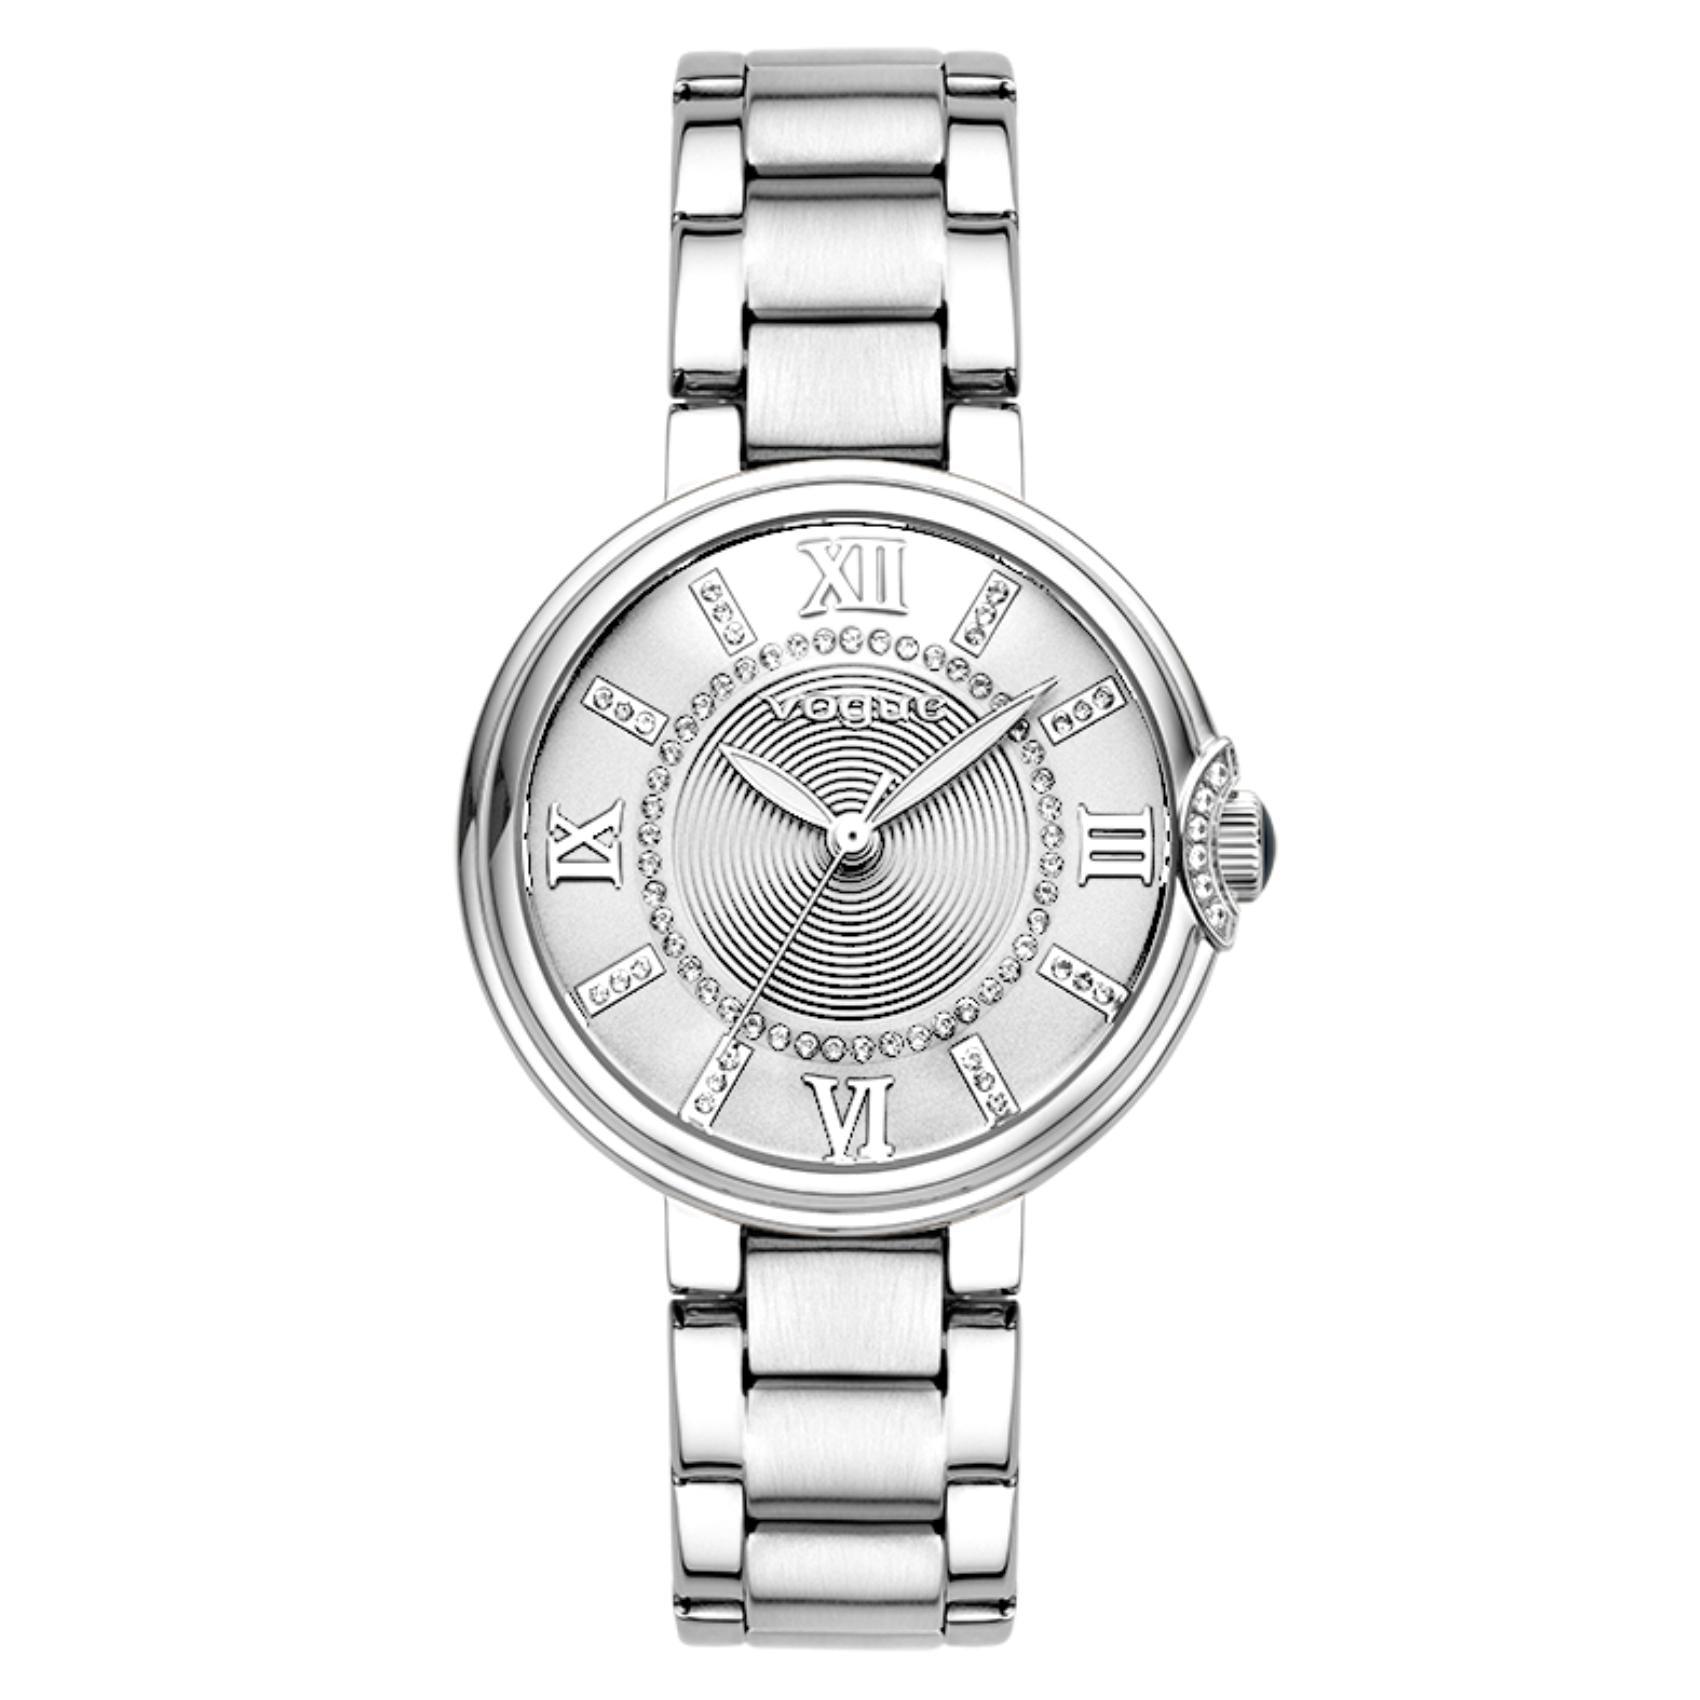 Γυναικείο ρολόι VOGUE Carmen 2020612881 με συνδυάζει ασημί μπρασελέ από ανοξείδωτο ατσάλι, ασημί καντράν με ασημί δείκτες και ζιργκόν περιμετρικά στο εσωτερικό του.